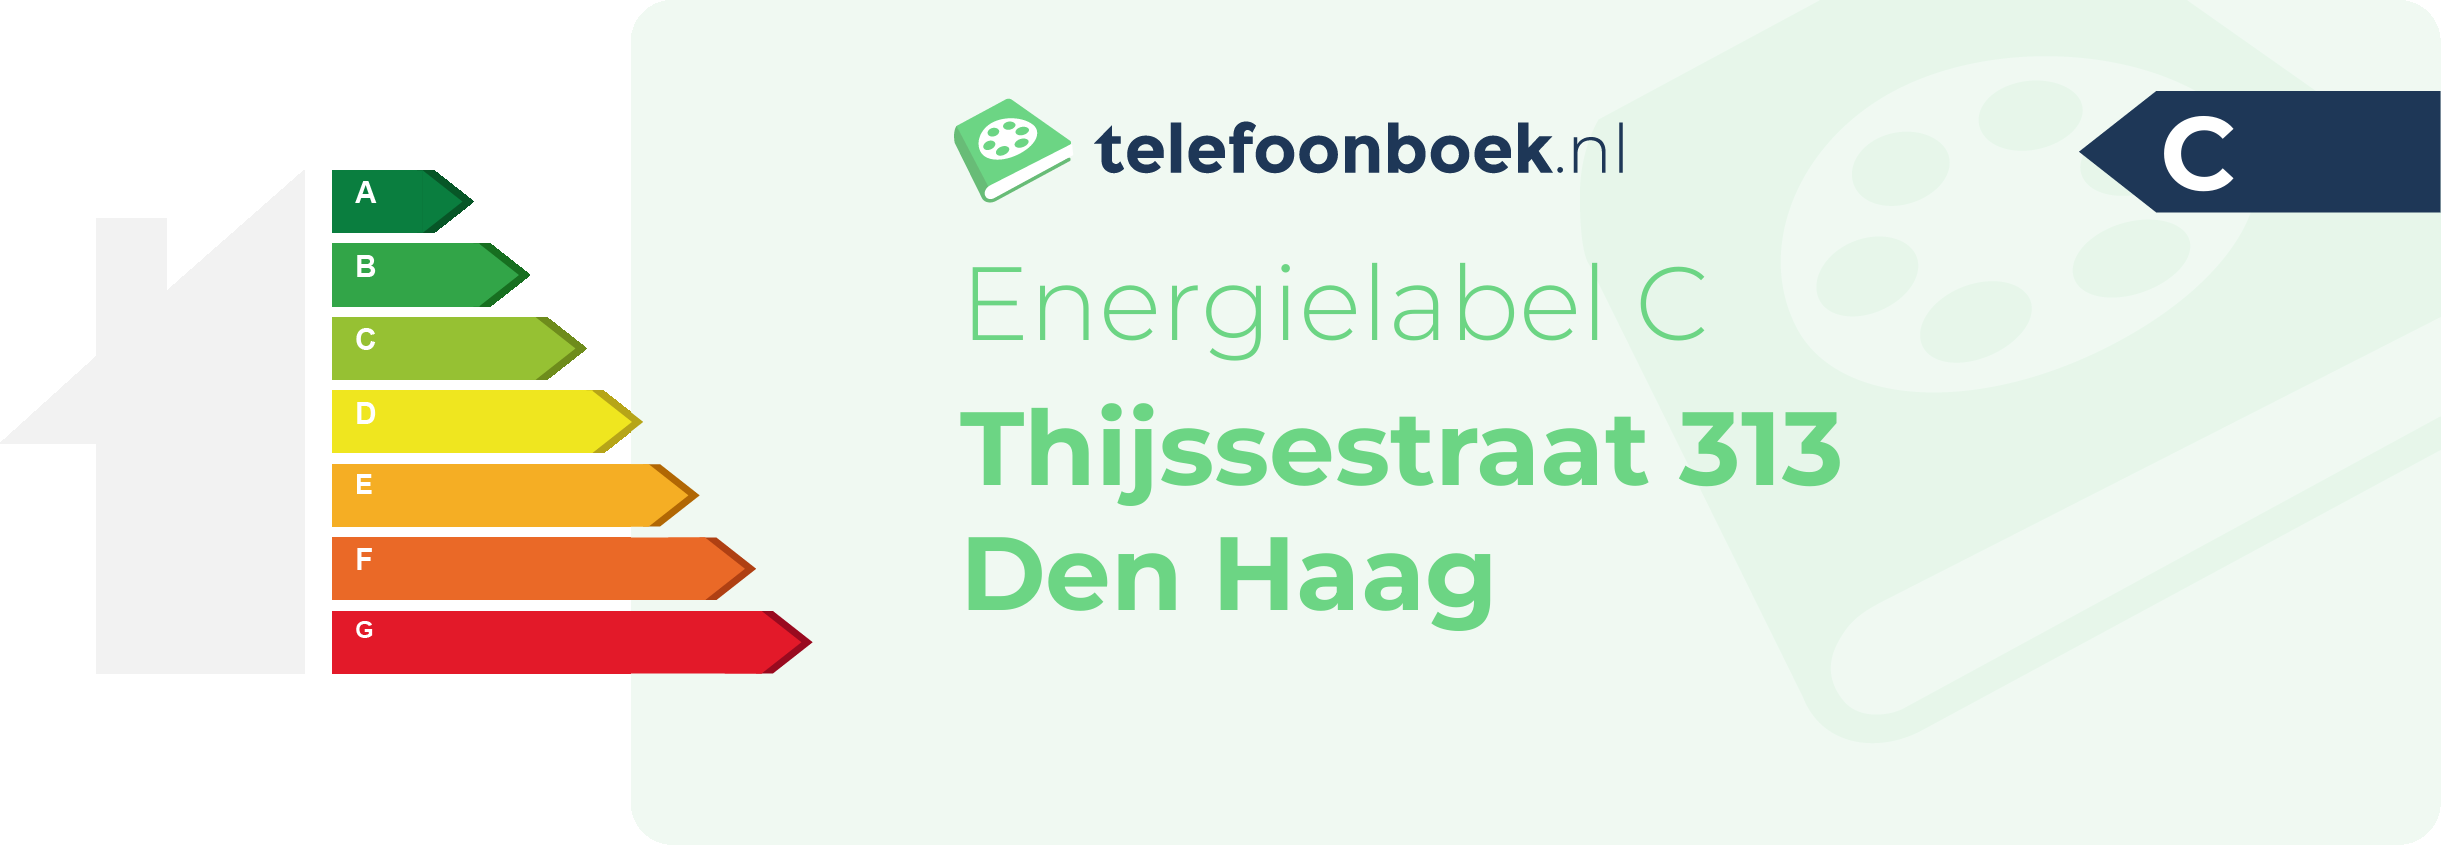 Energielabel Thijssestraat 313 Den Haag